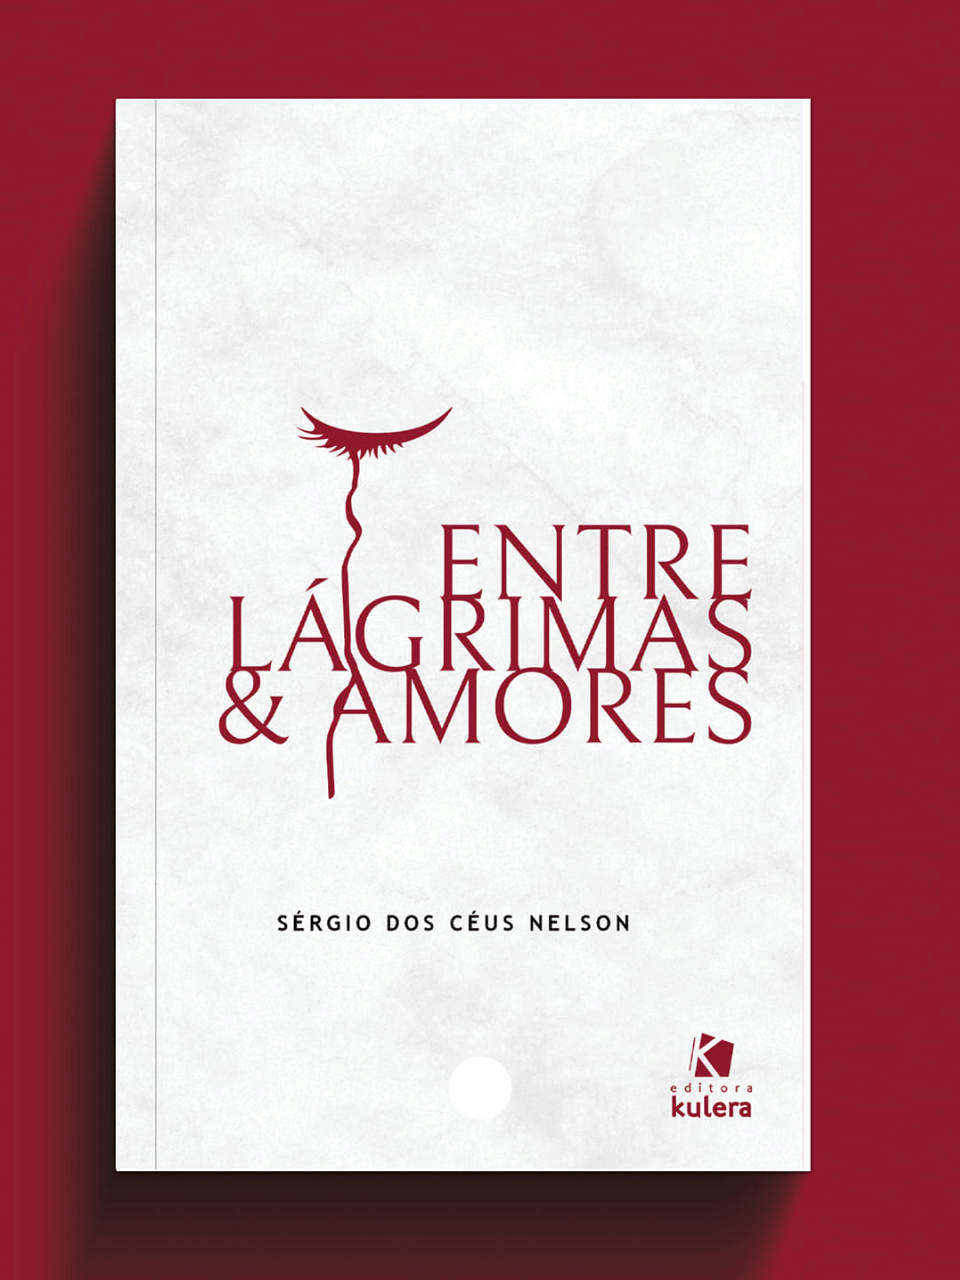 a capa de um livro intitulado entre lagrimas & amores